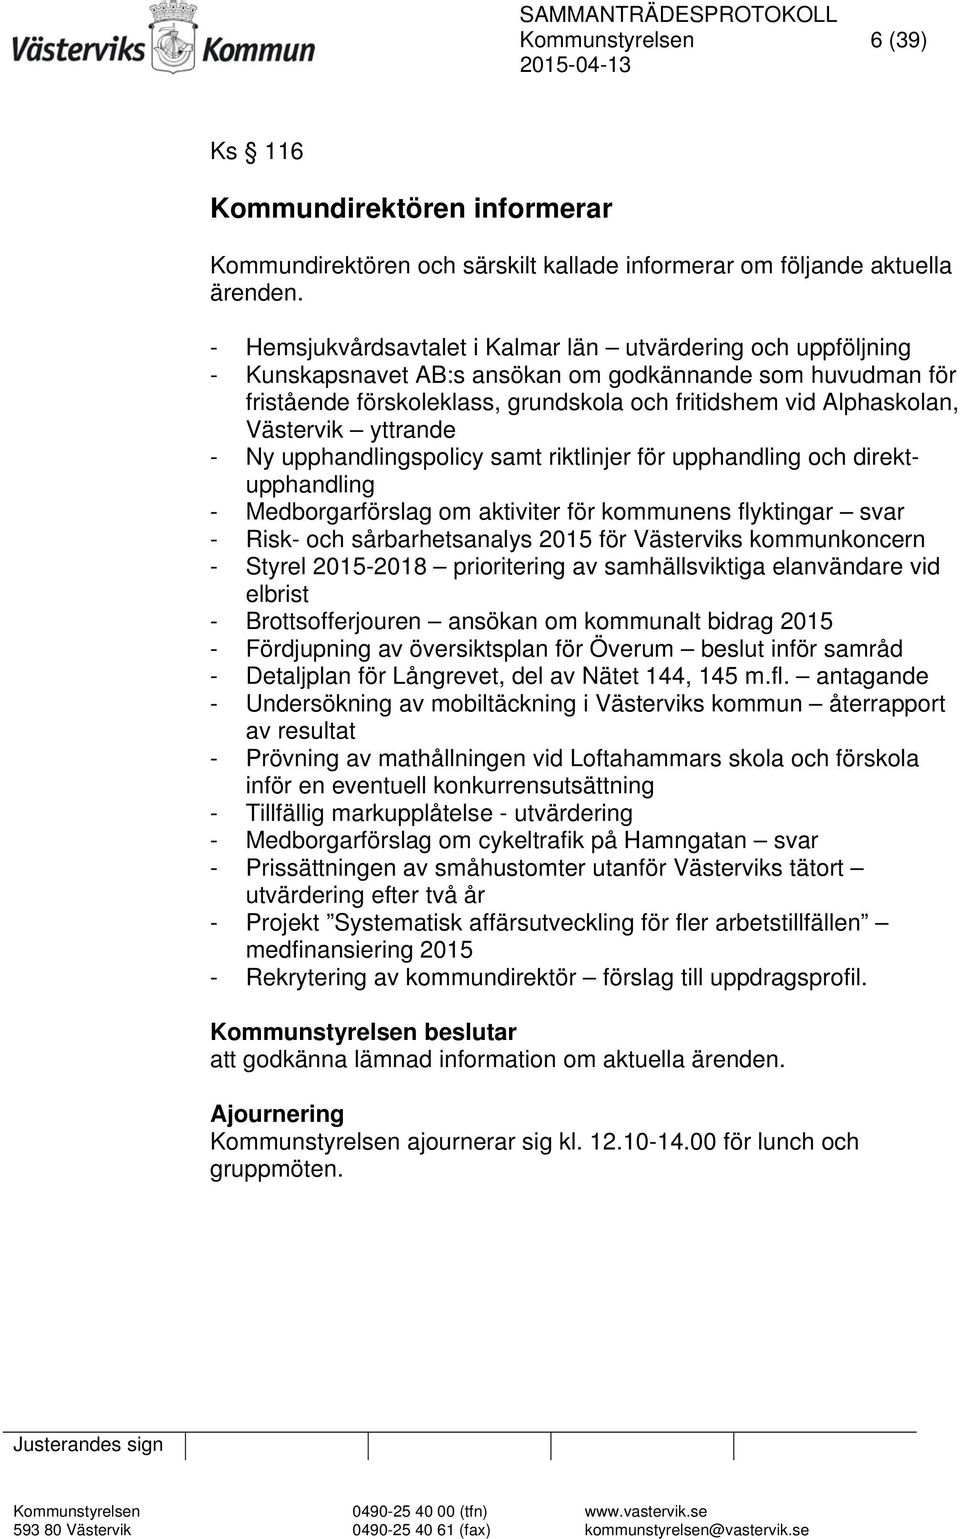 Västervik yttrande - Ny upphandlingspolicy samt riktlinjer för upphandling och direktupphandling - Medborgarförslag om aktiviter för kommunens flyktingar svar - Risk- och sårbarhetsanalys 2015 för